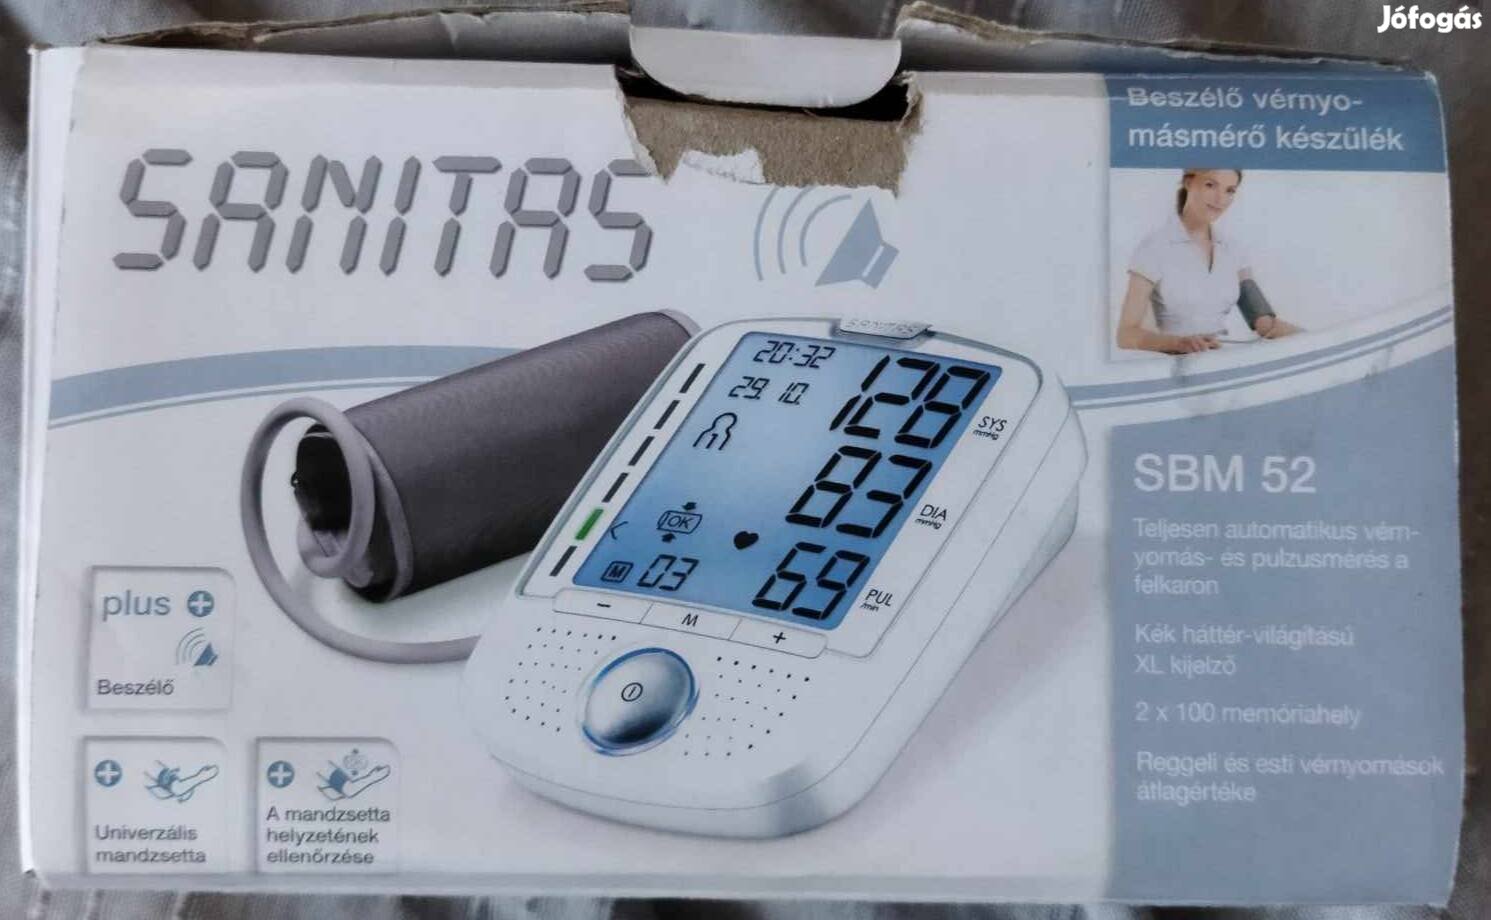 Sanitas beszélő vérnyomásmérő készülék 